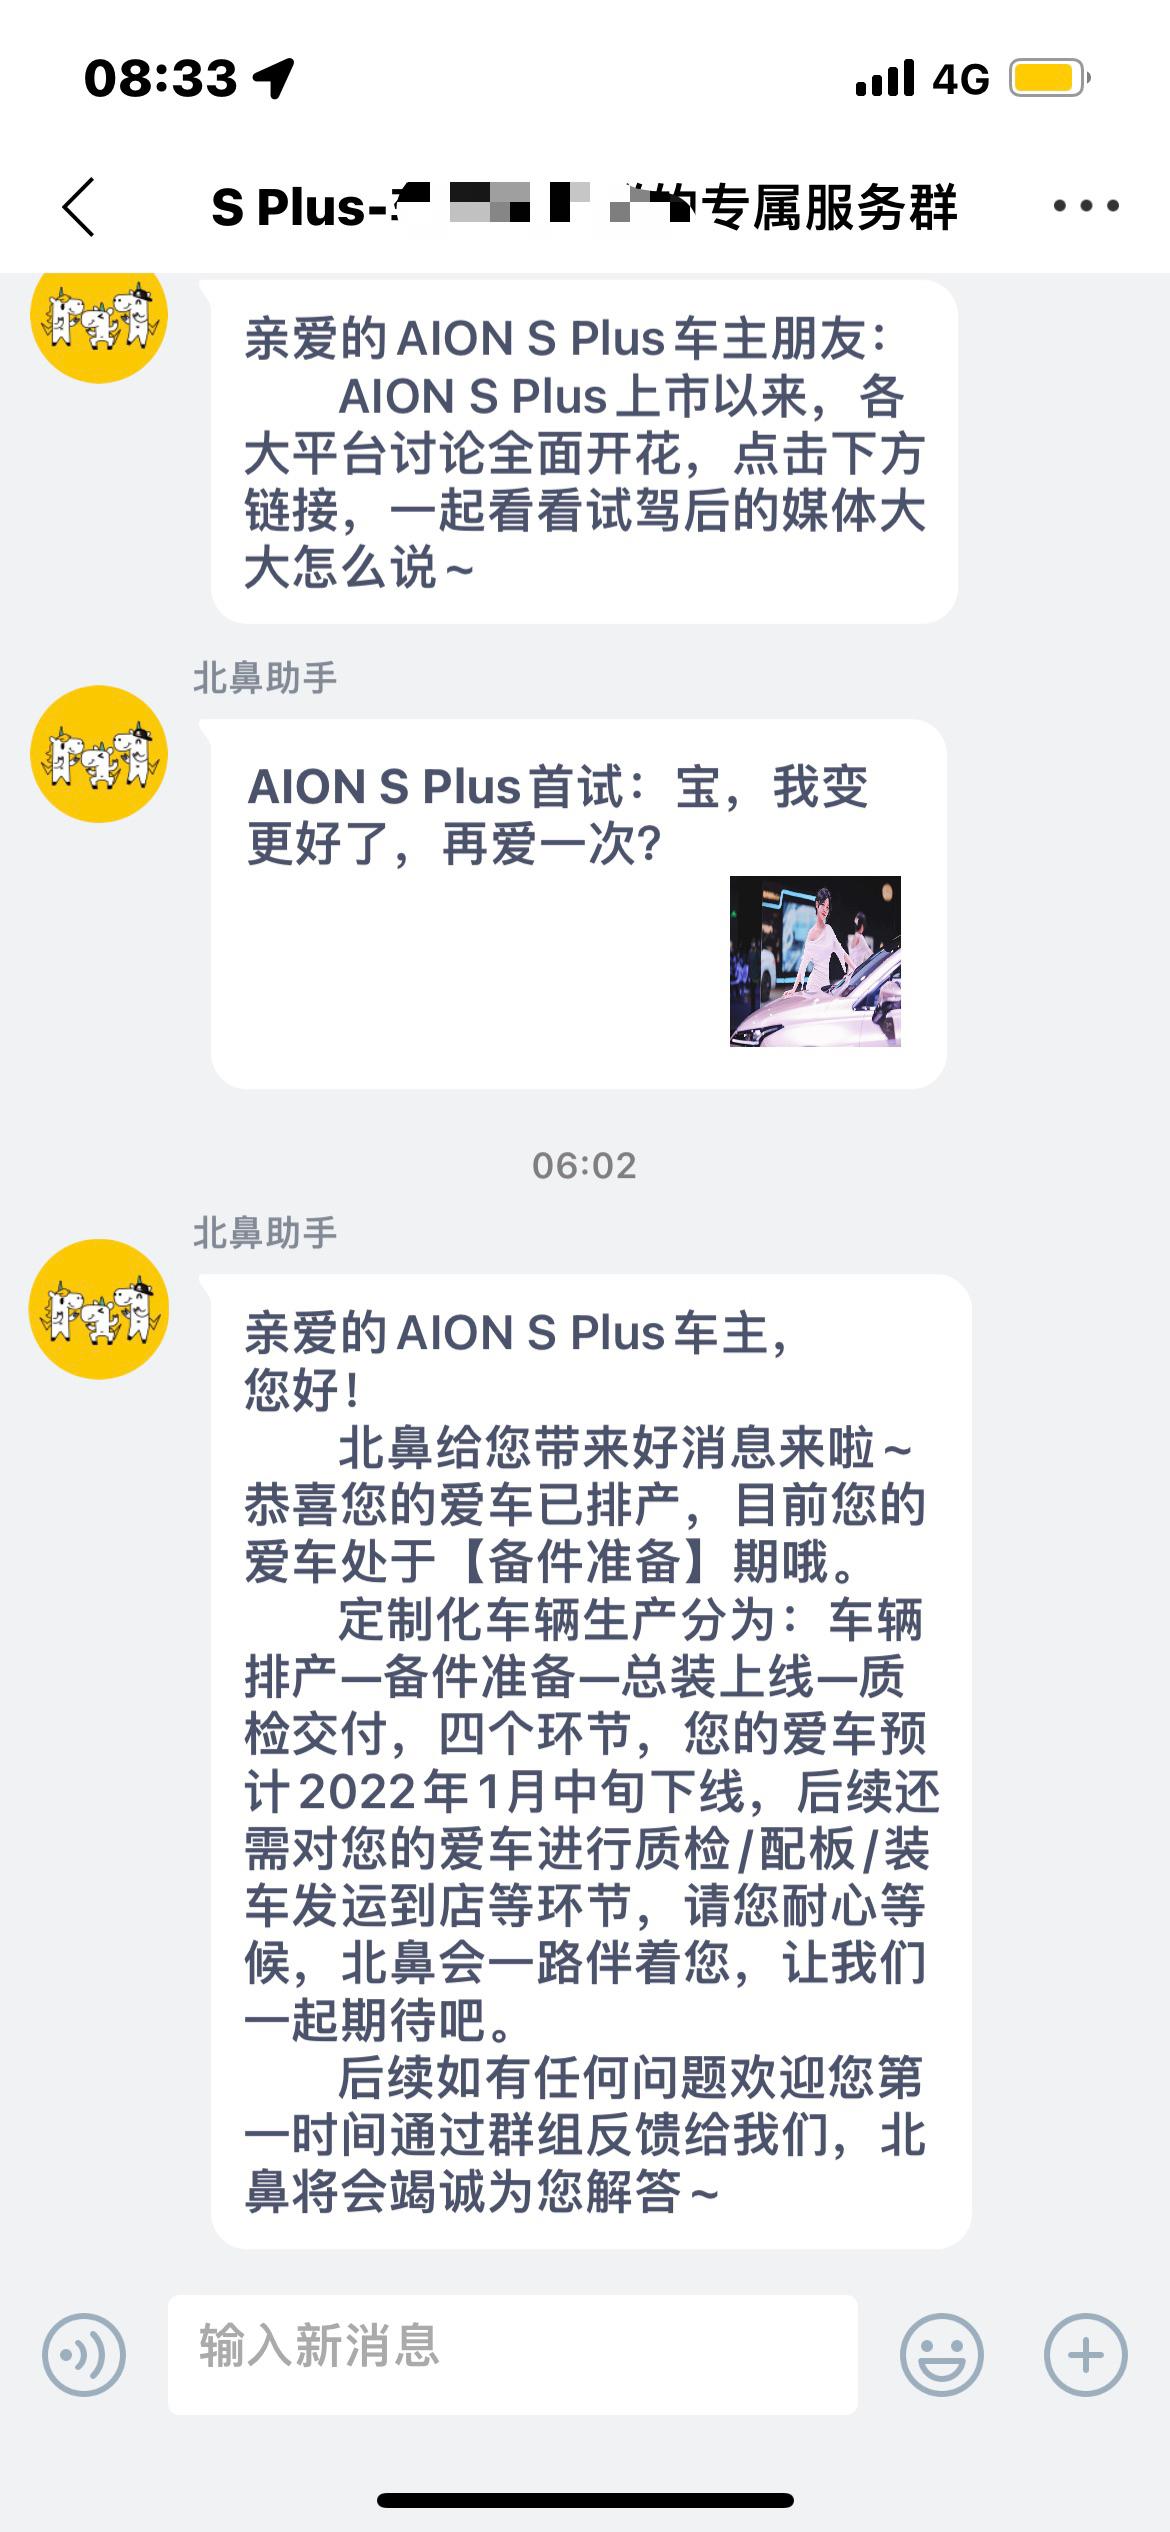 埃安AION S 坐标上海，70科技冰梅粉，11.27晚上下定，12.29推送消息进去排产但是状态还是未生产，1.6号晚